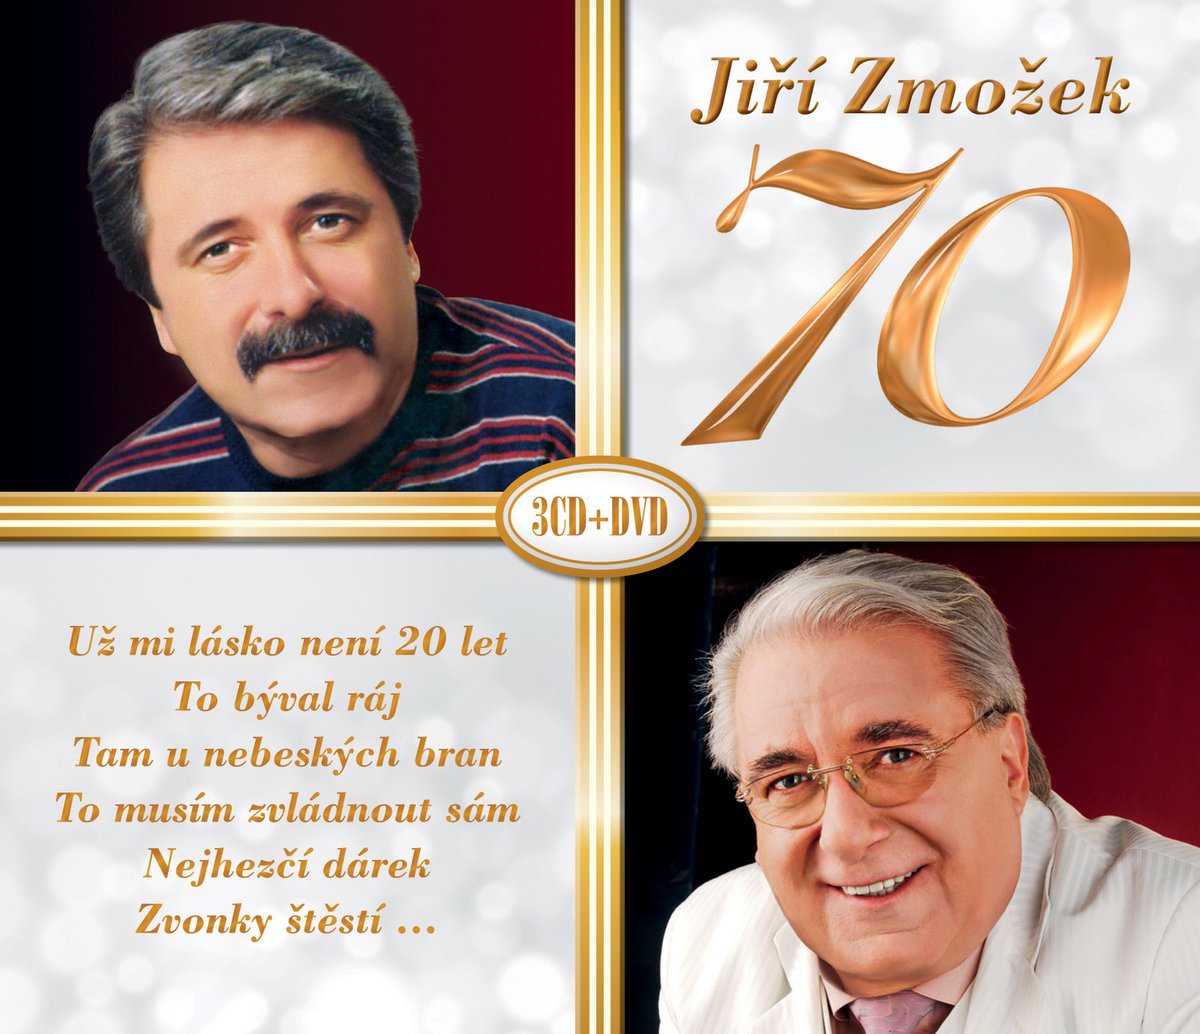 Jiří Zmožek